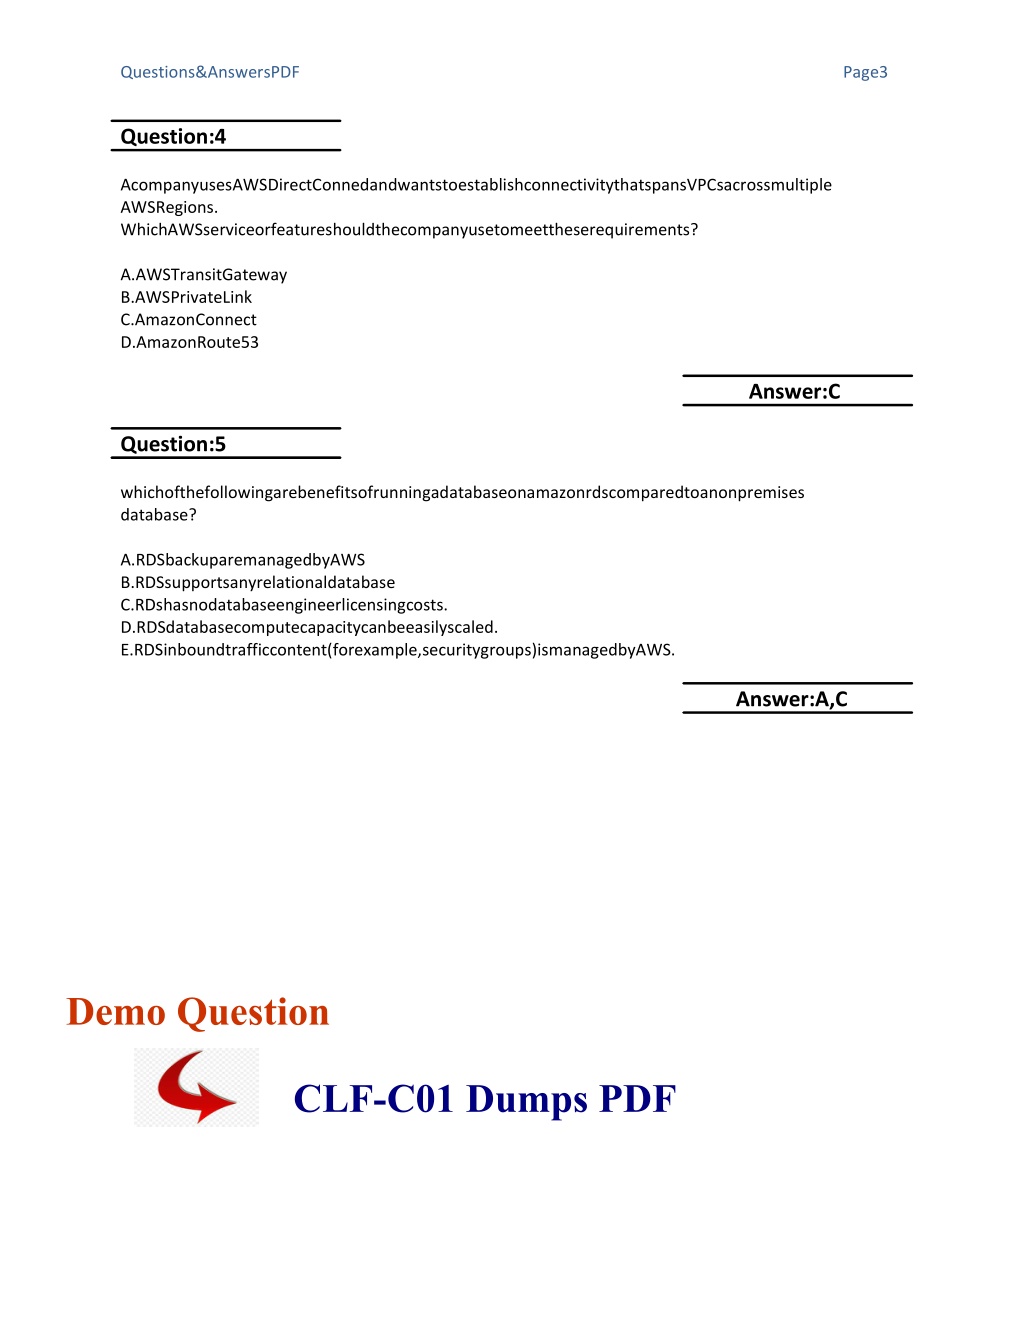 CLF-C01 Ausbildungsressourcen